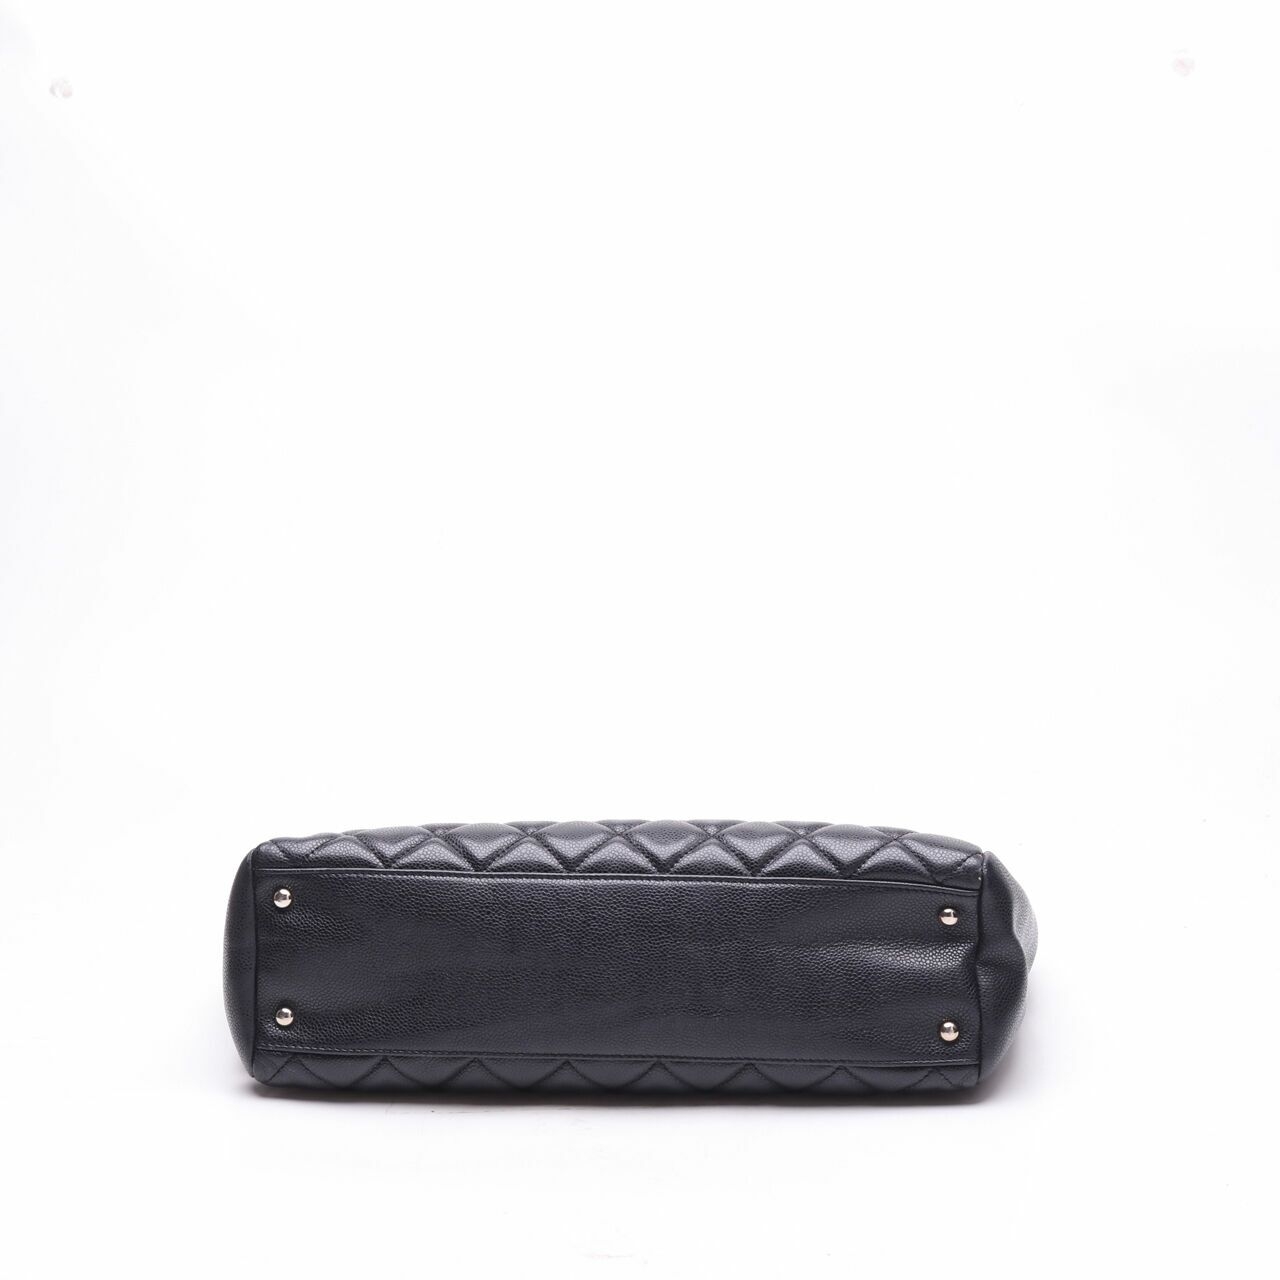 Chanel Black Quilted Shoulder Bag